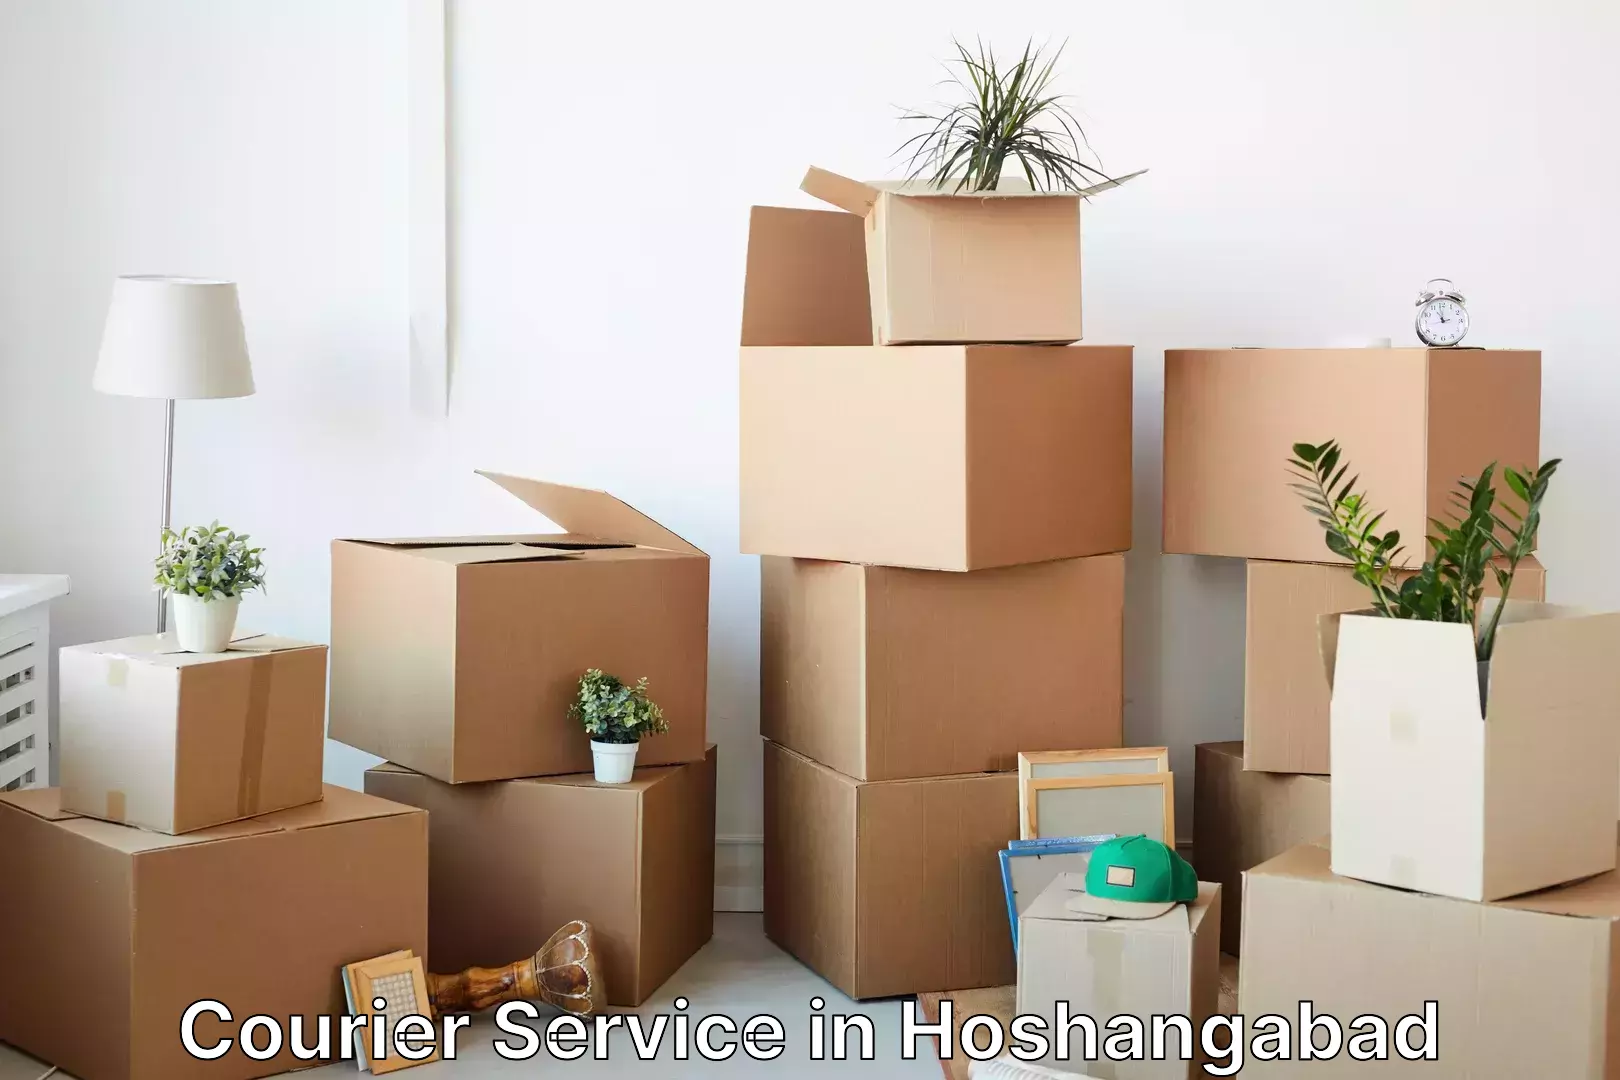 Flexible shipping options in Hoshangabad